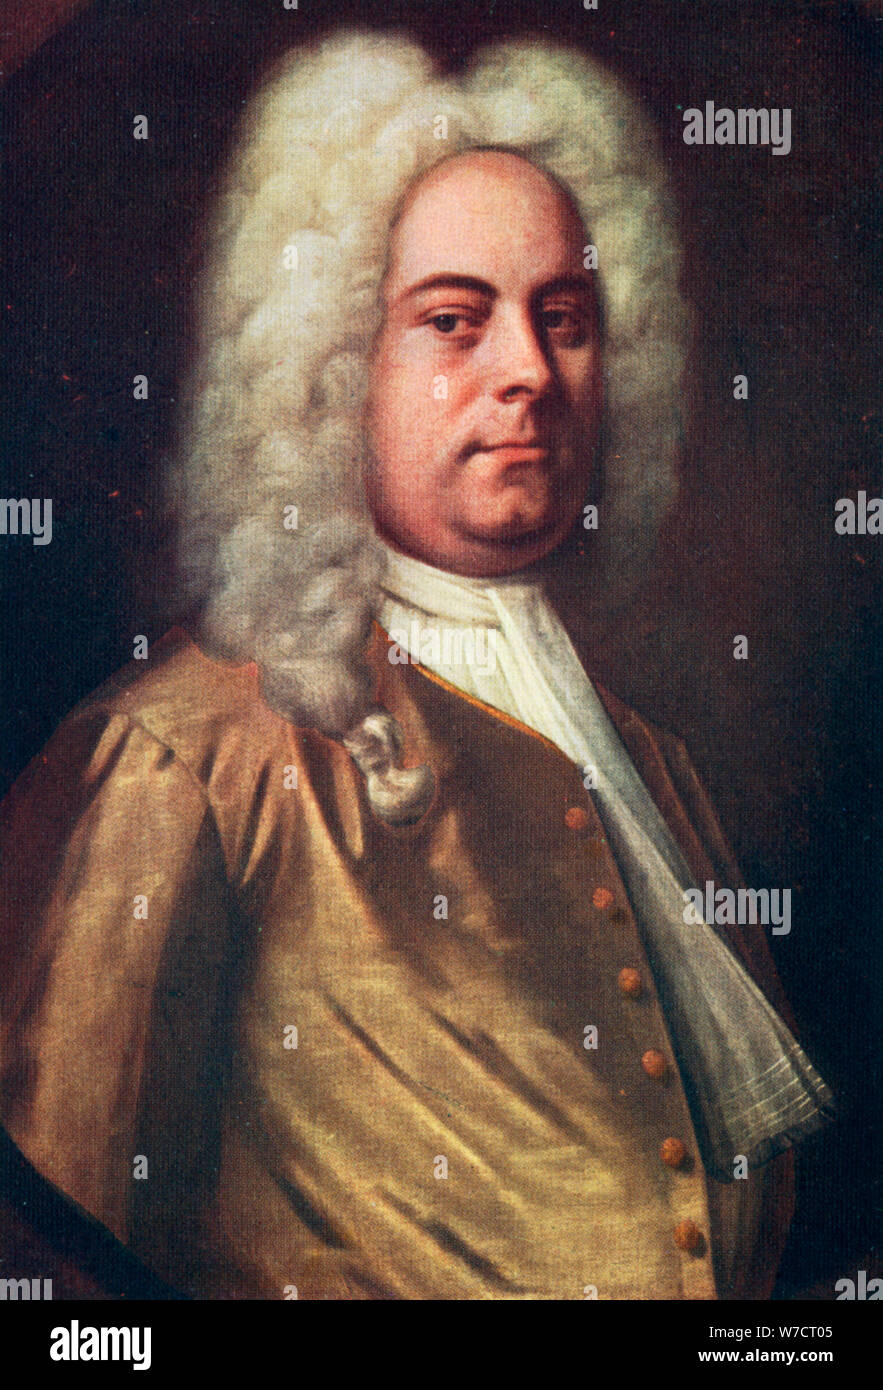 George Frideric Handel, (1685-1759), compositeur allemand, c1730s. Artiste : Balthasar Denner Banque D'Images